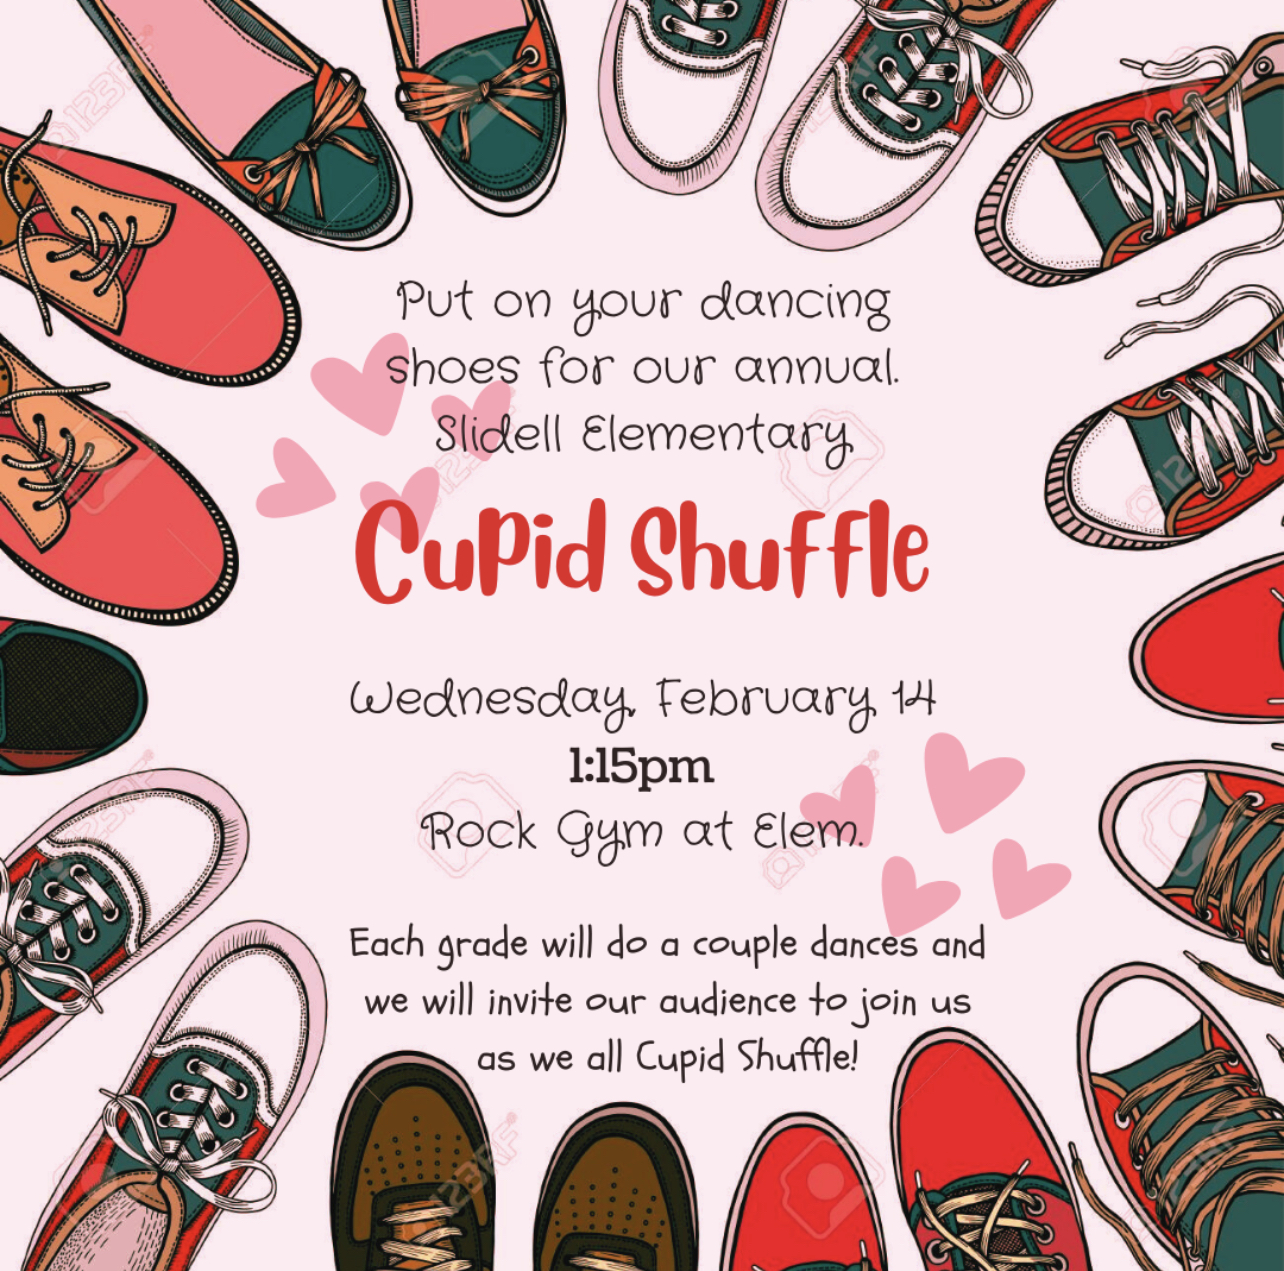 Cupid Shuffle Wed. Feb. 14 at 1:15 pm